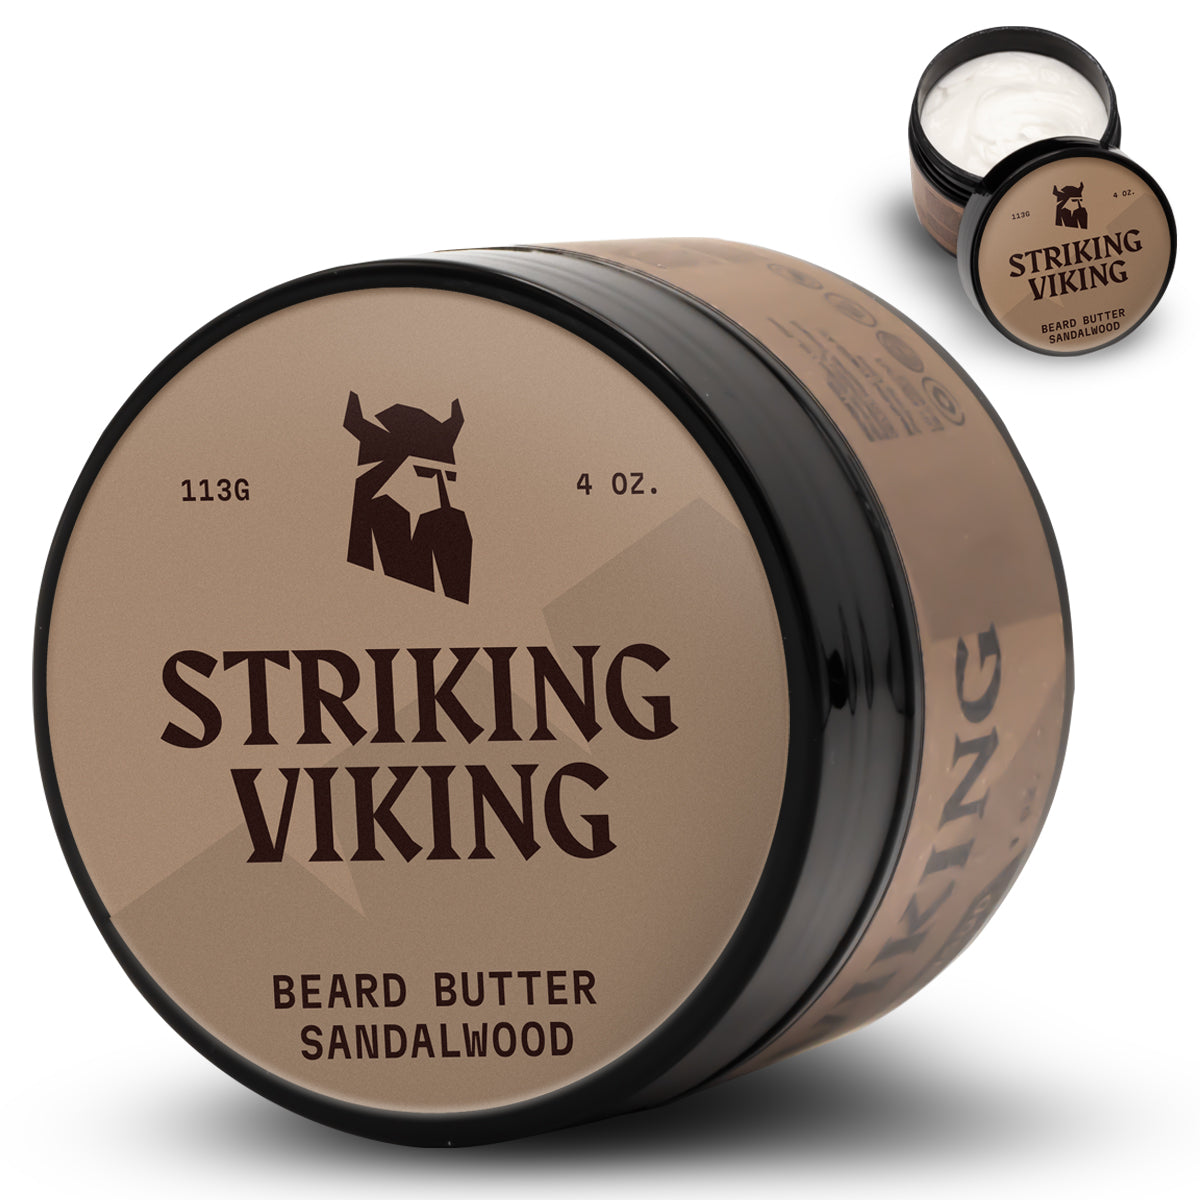 beard-butter-sandalwood-main-image-01.jpg